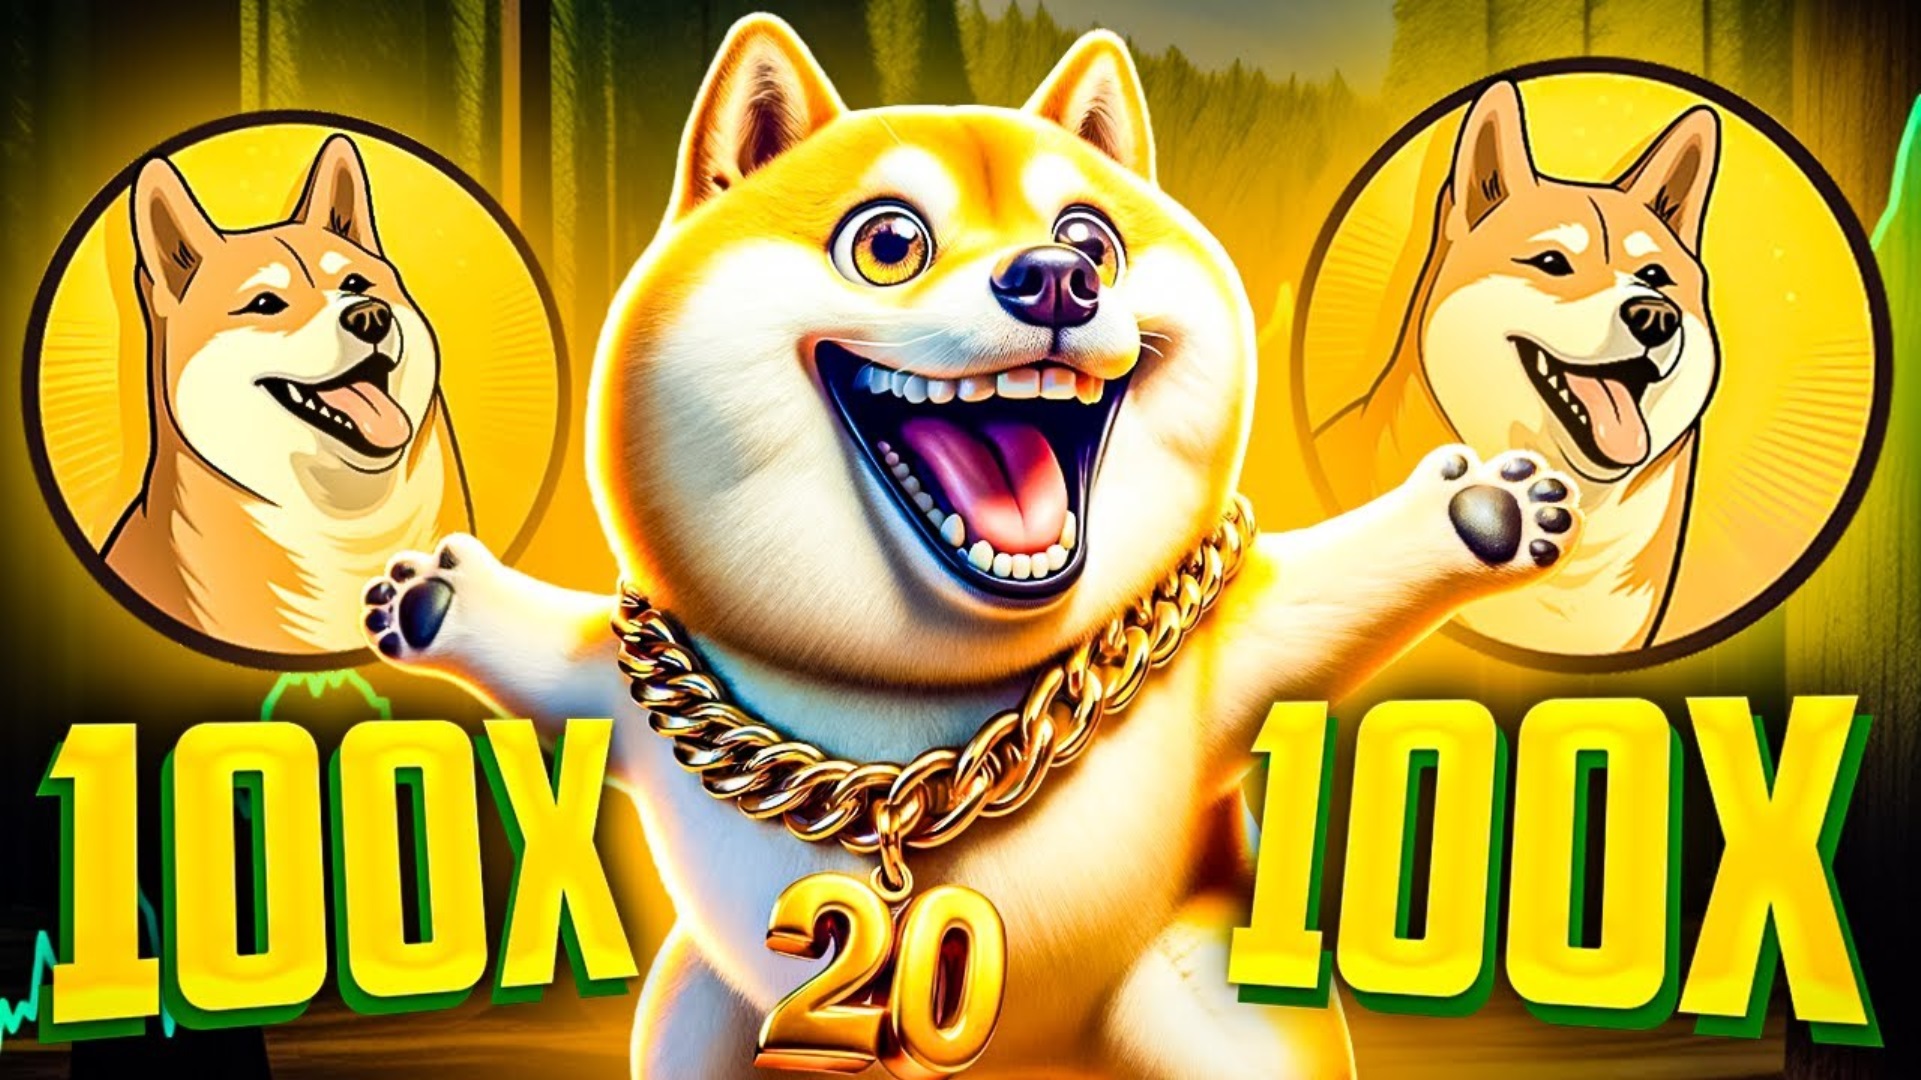 Next Big Meme Coin Dogecoin20 Surges Past $2M As DOGE Price Slumps 5%